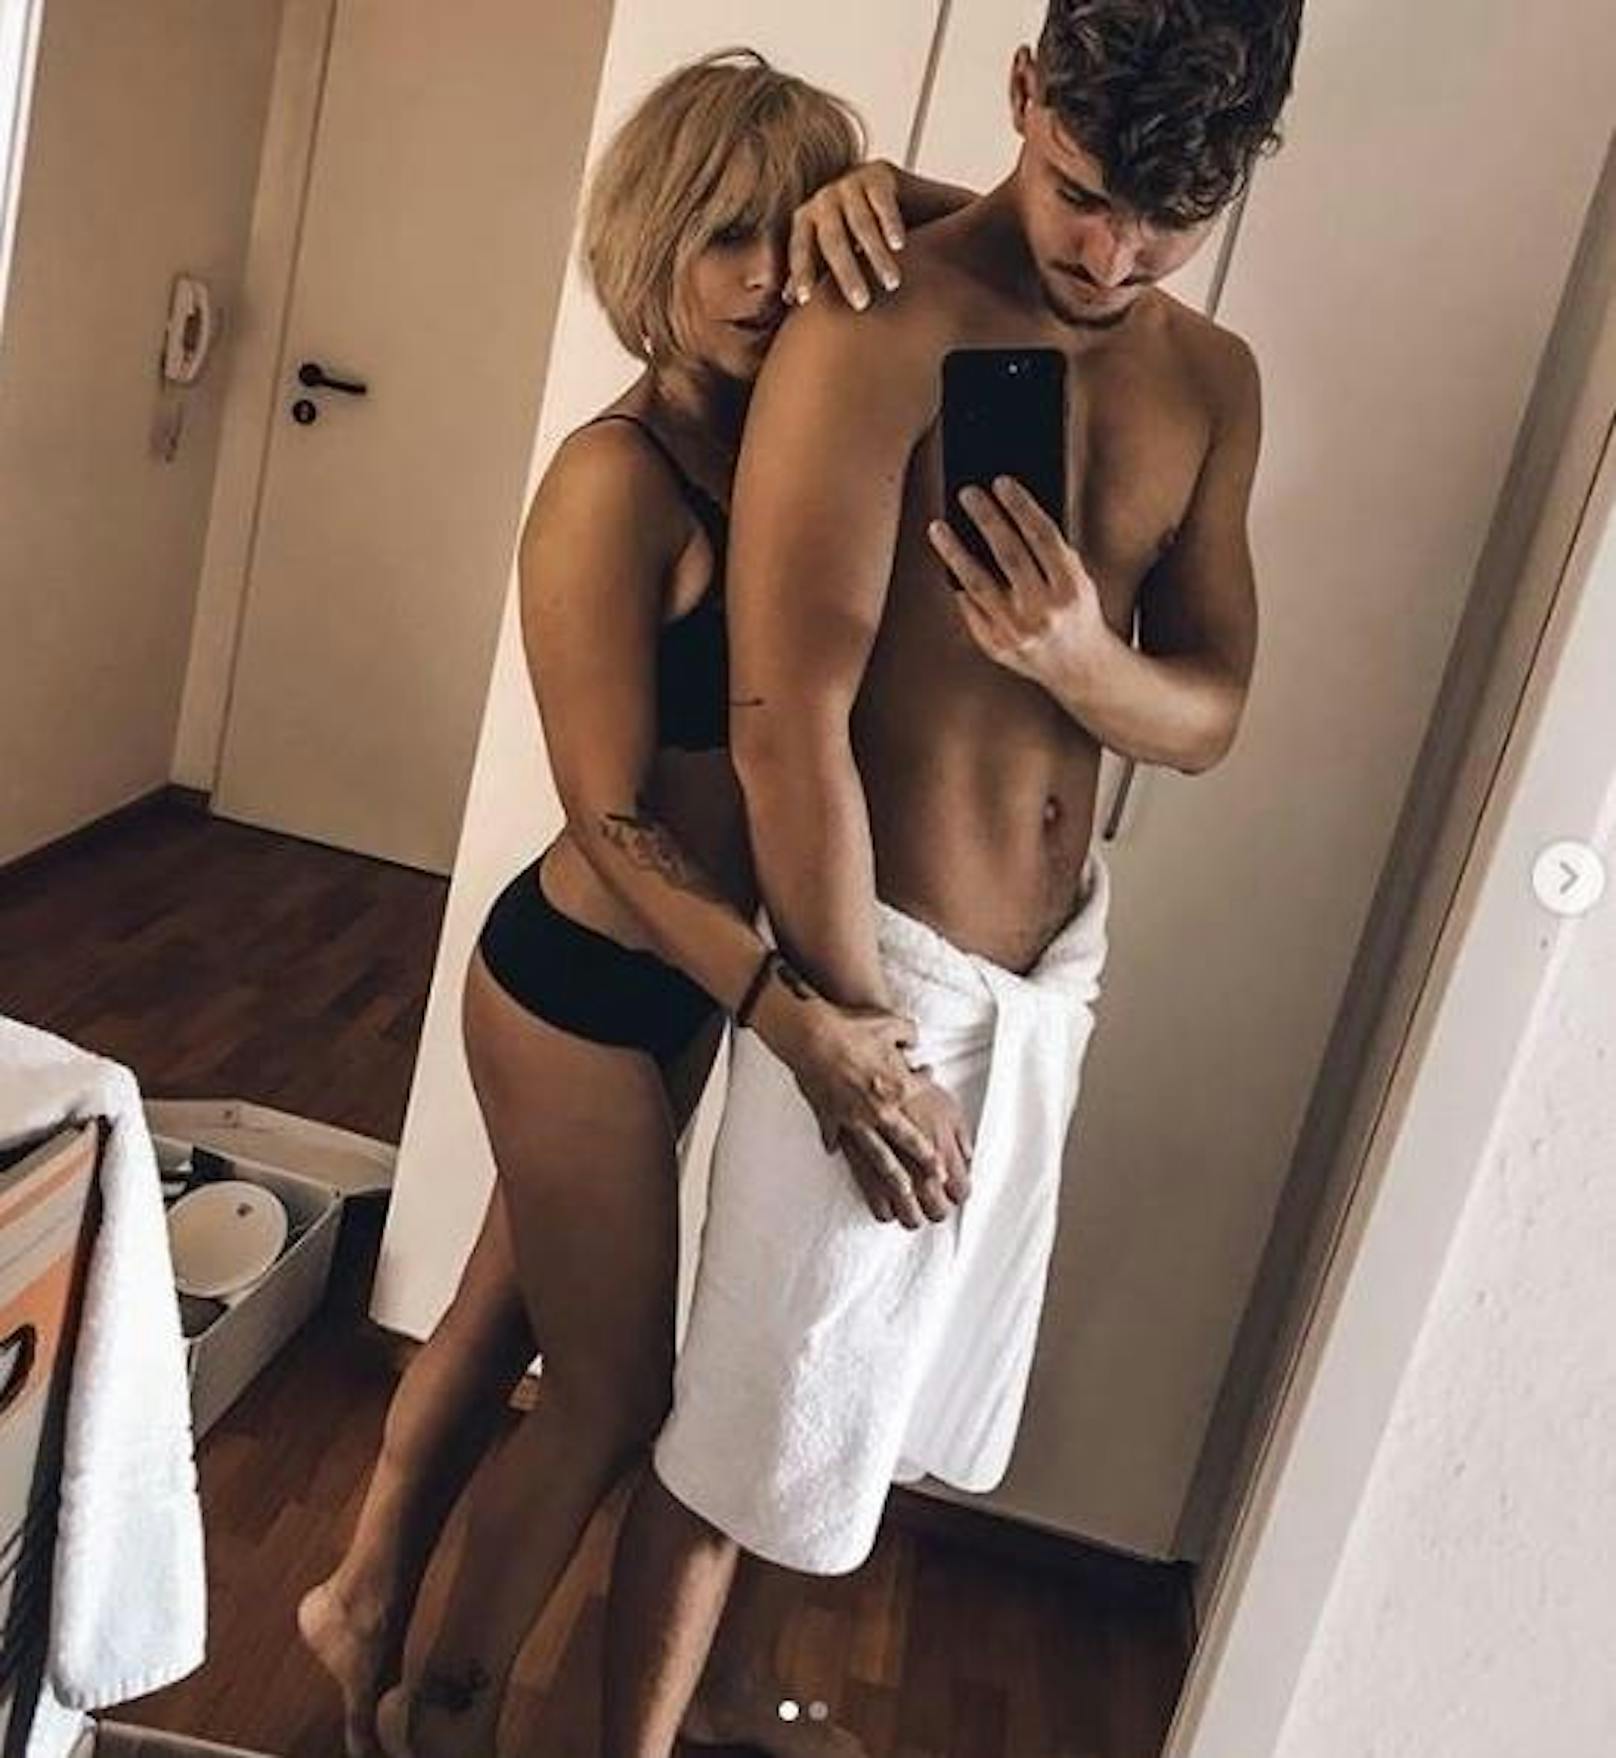 24.09.2018: Schlagerstar Michelle zeigt sich mit ihrem Lover Karsten Walter auf einem extrem heißen Instagram-Pic. "Guten Morgen Welt", schreibt die 46-Jährige dazu.